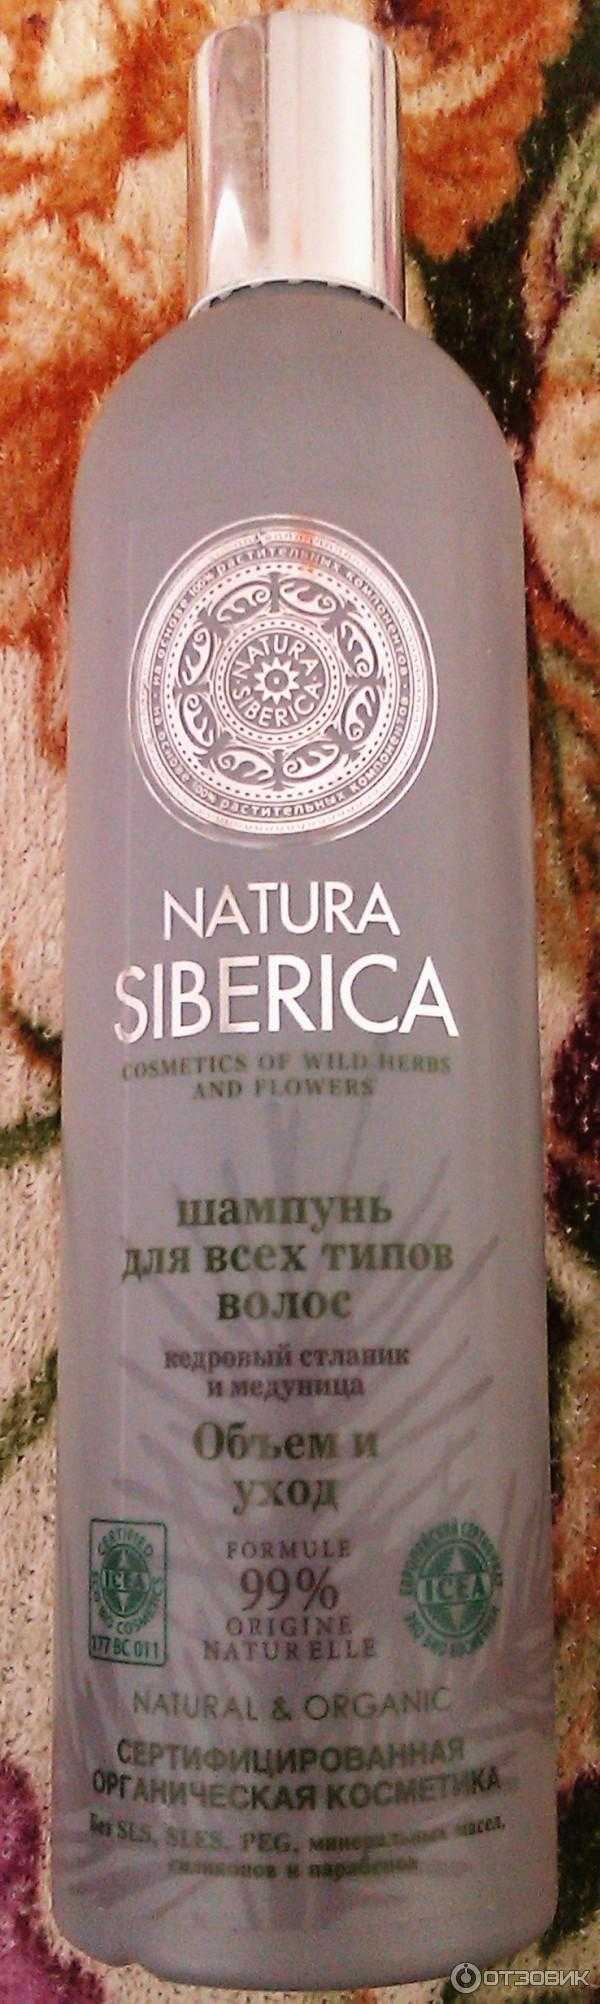 Шампунь натура сиберика для жирных волос (natura siberica): отзывы, состав, инструкция по применению, фото до и после, цена